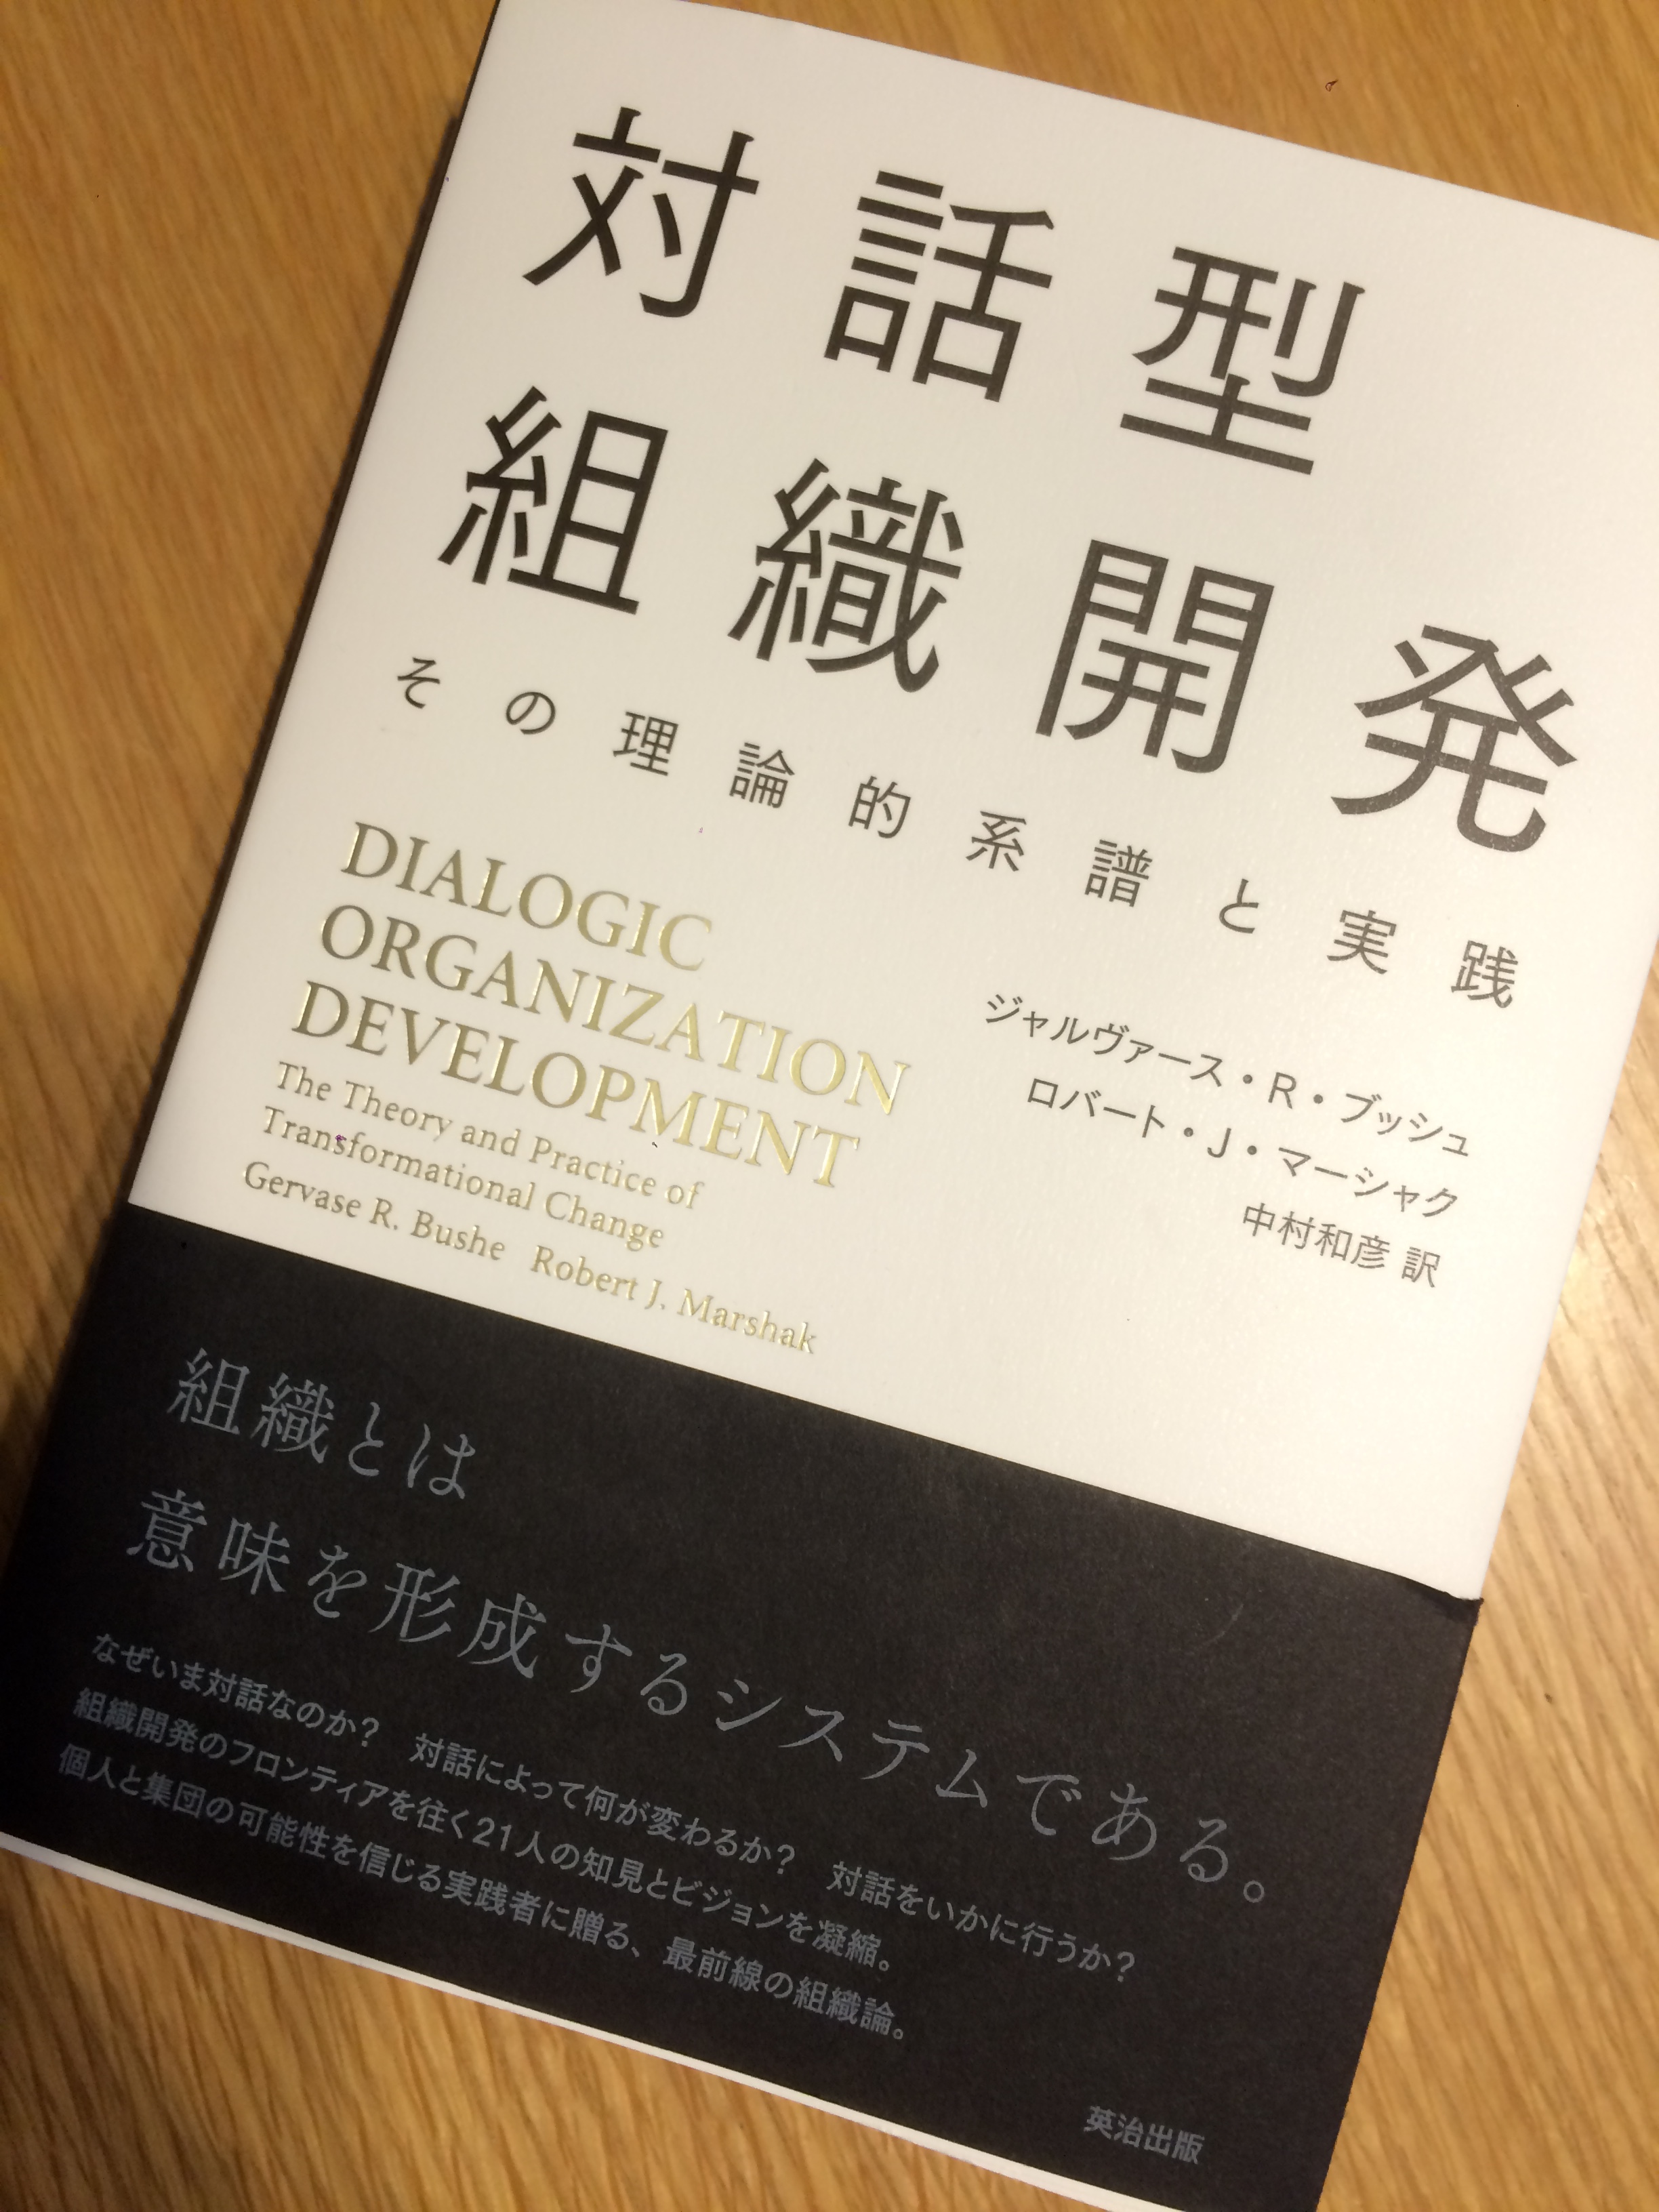 対話型組織開発の書籍